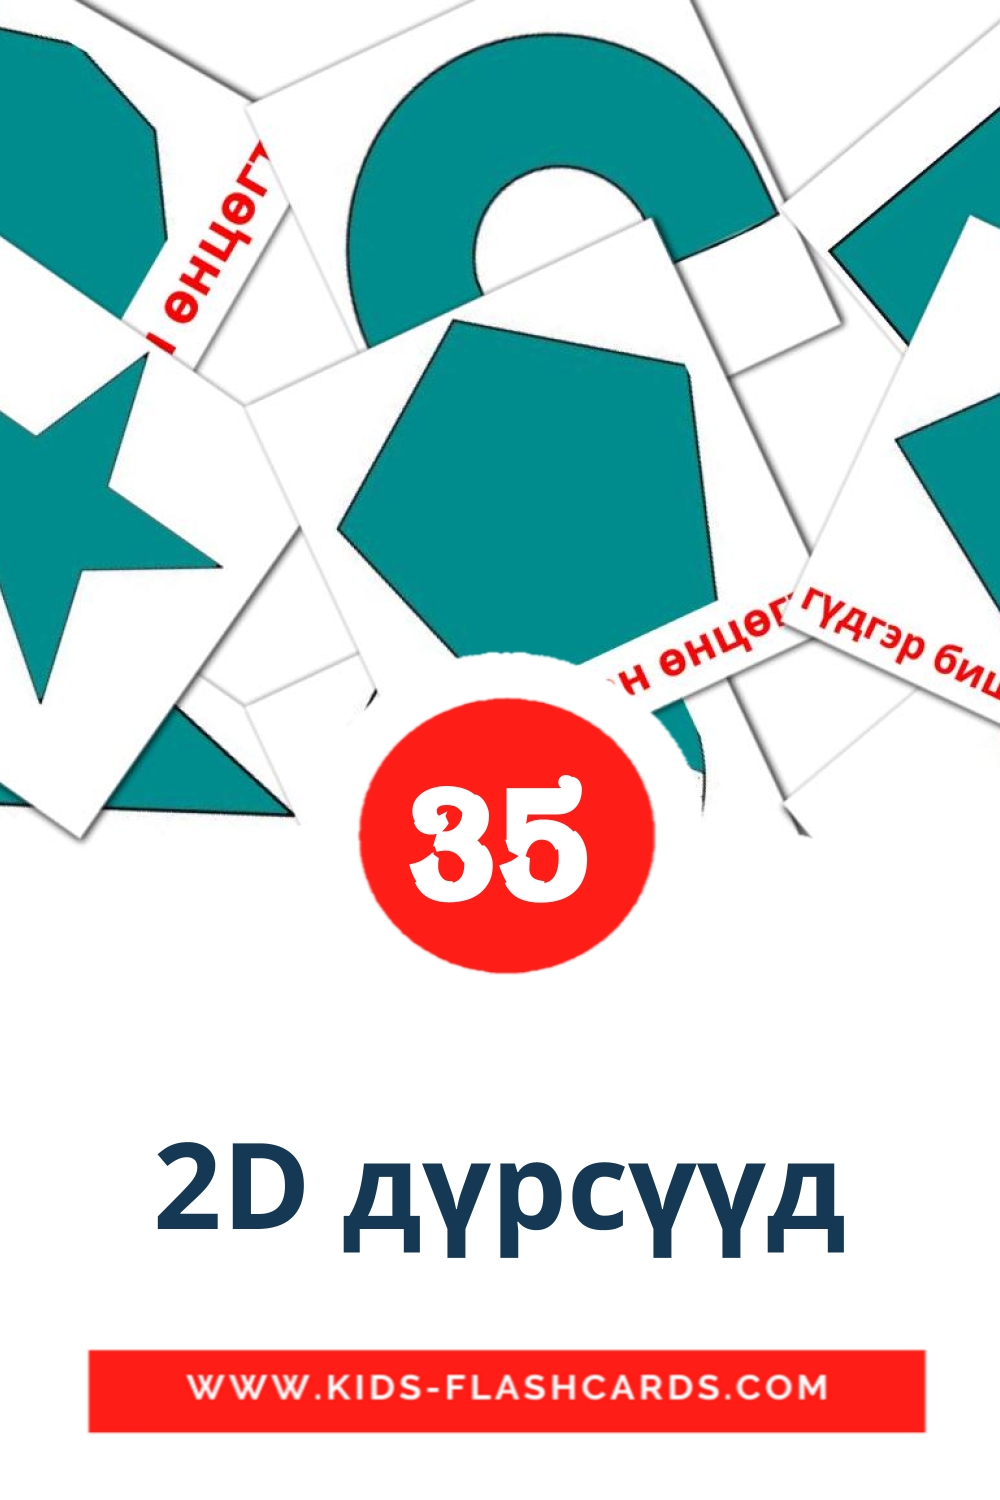 2D дүрсүүд на монгольском для Детского Сада (35 карточек)